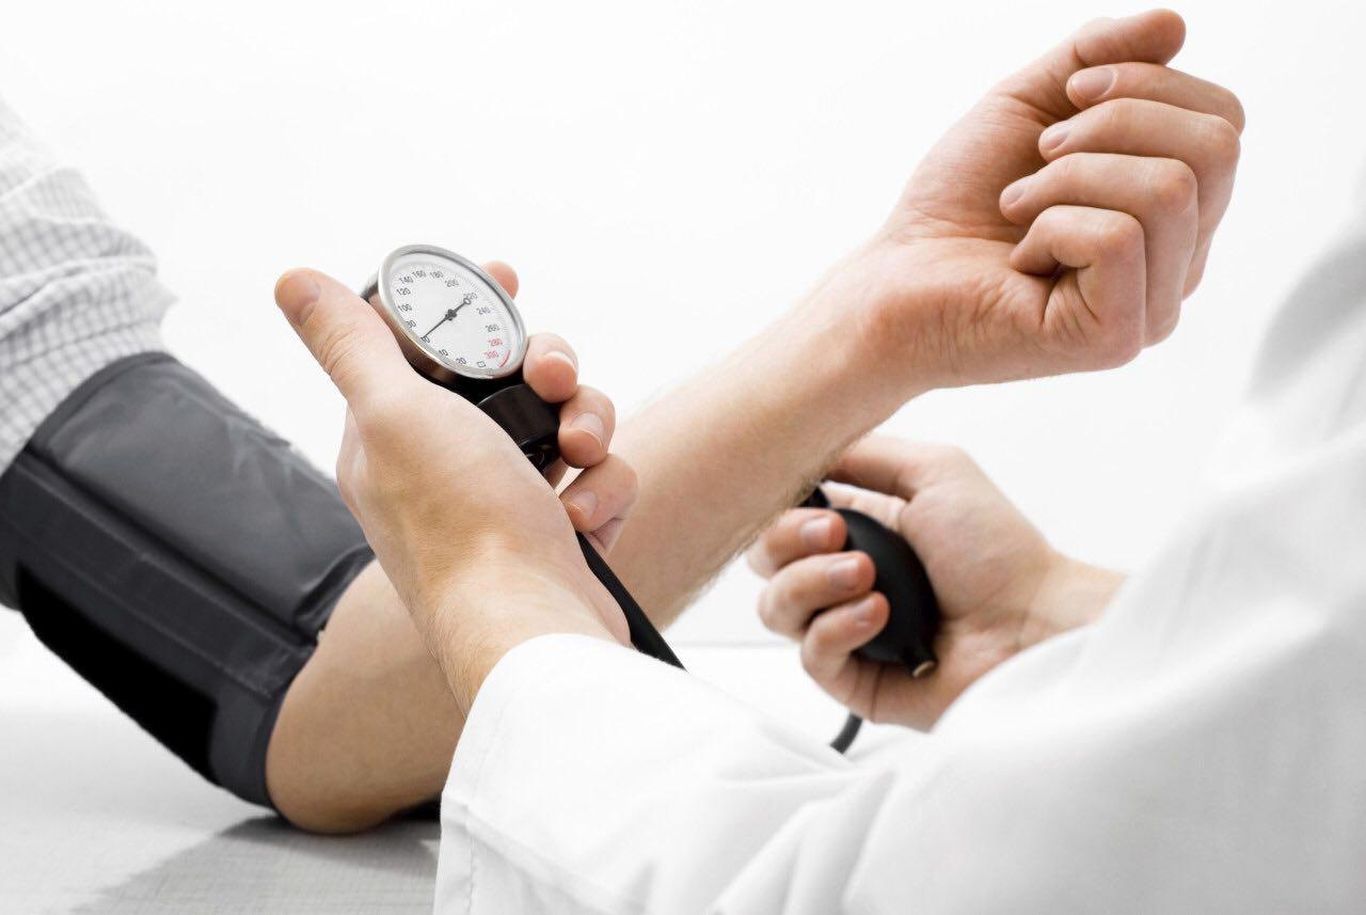  فشار خون بالا؛ از عوامل تا درمان!